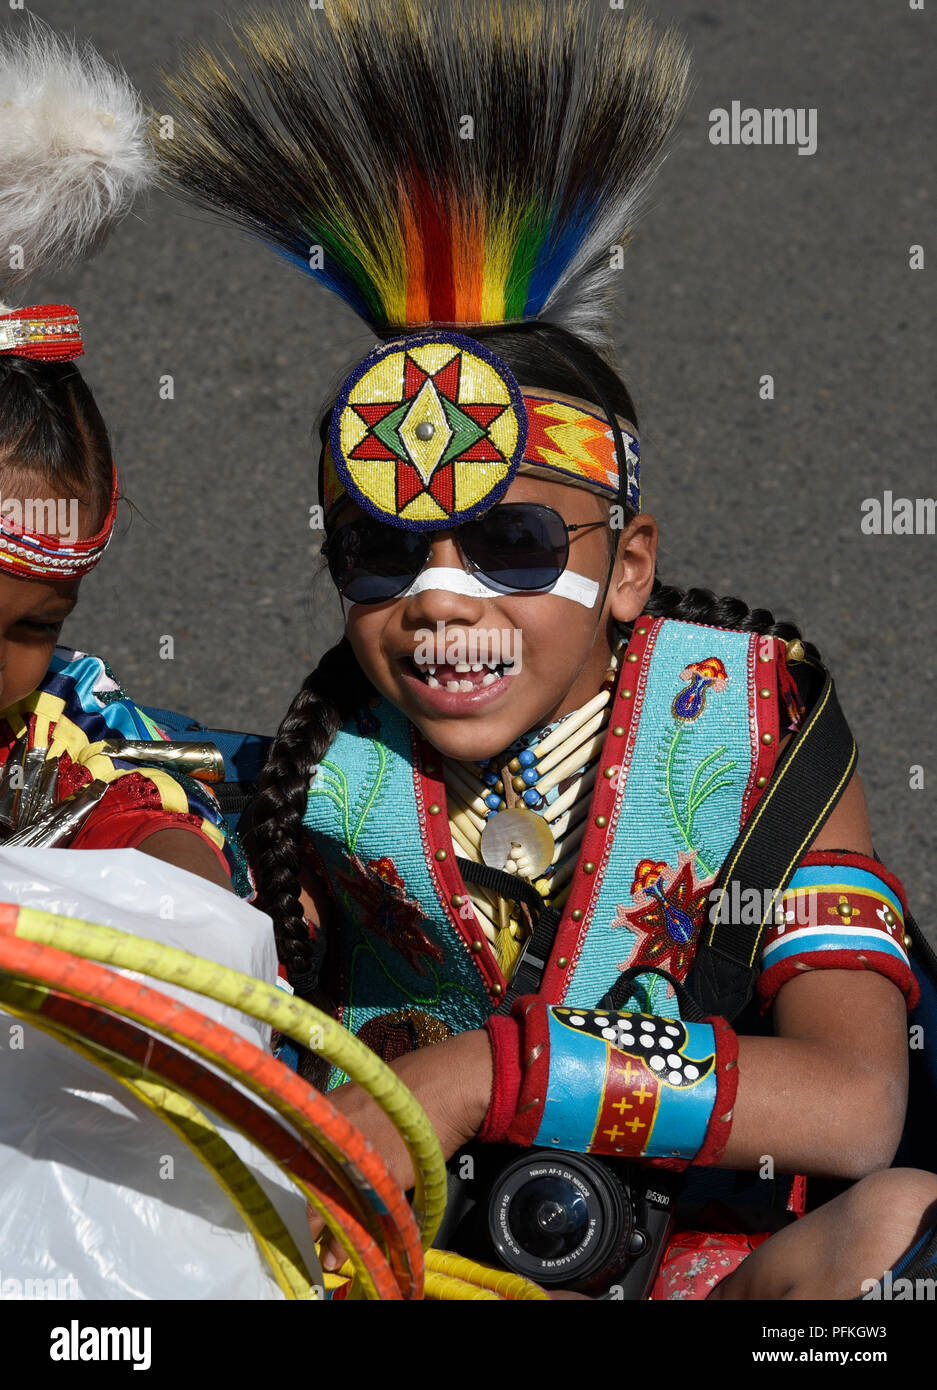 Eine junge Native-American junge tragen traditionelle Plains Indianer regalia im Santa Fe indischen Markt. Stockfoto